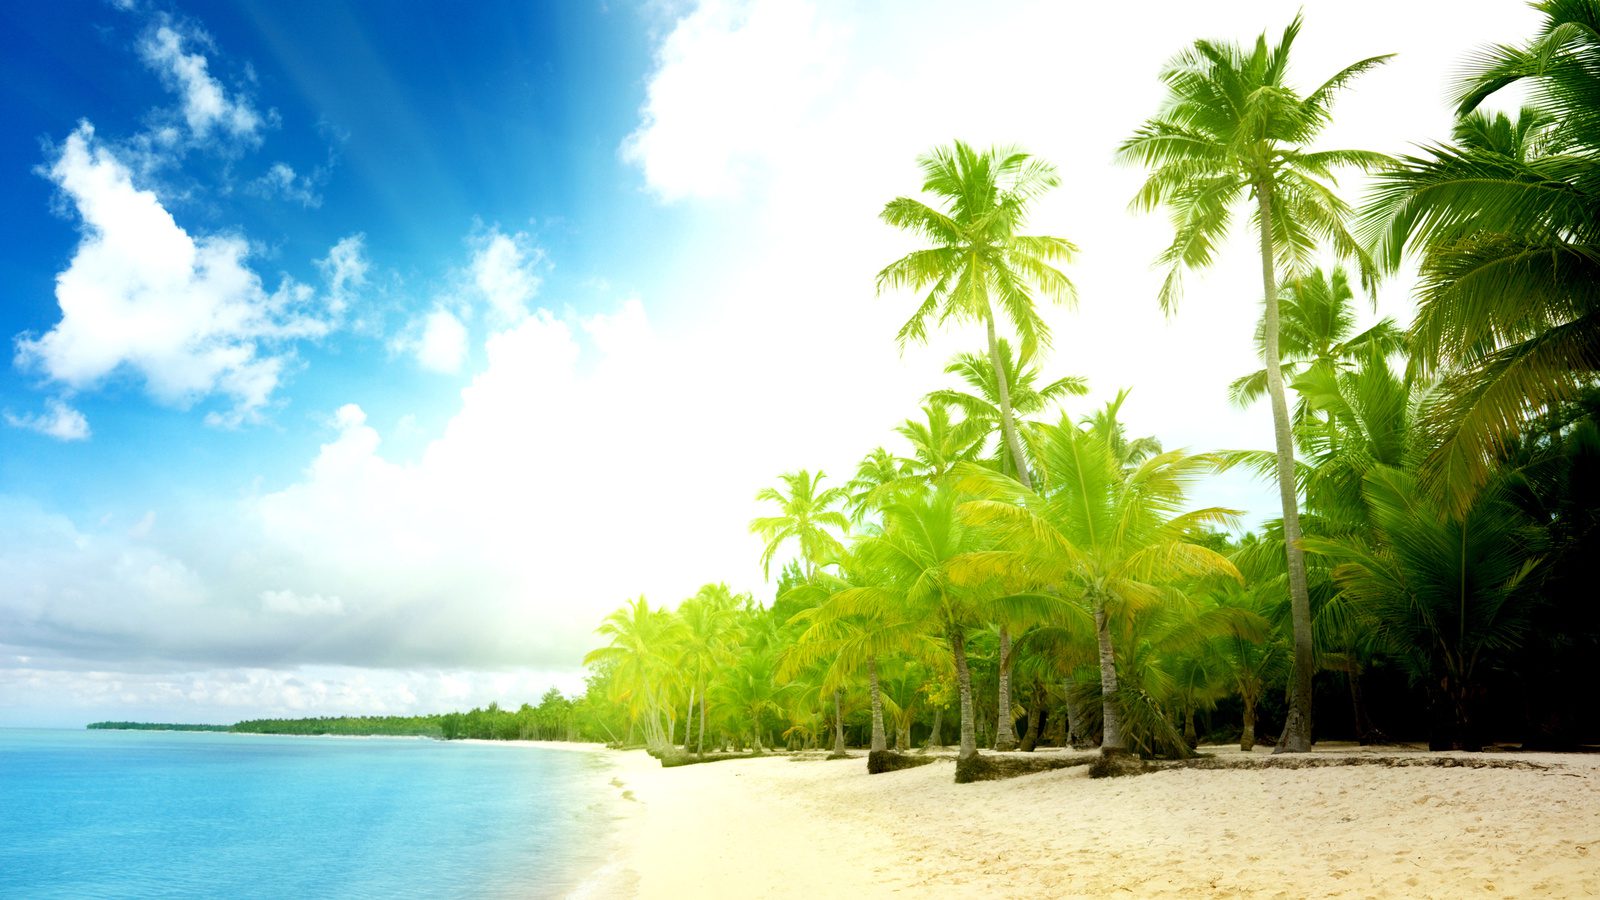 Море, солнце, пляж и пальмы.